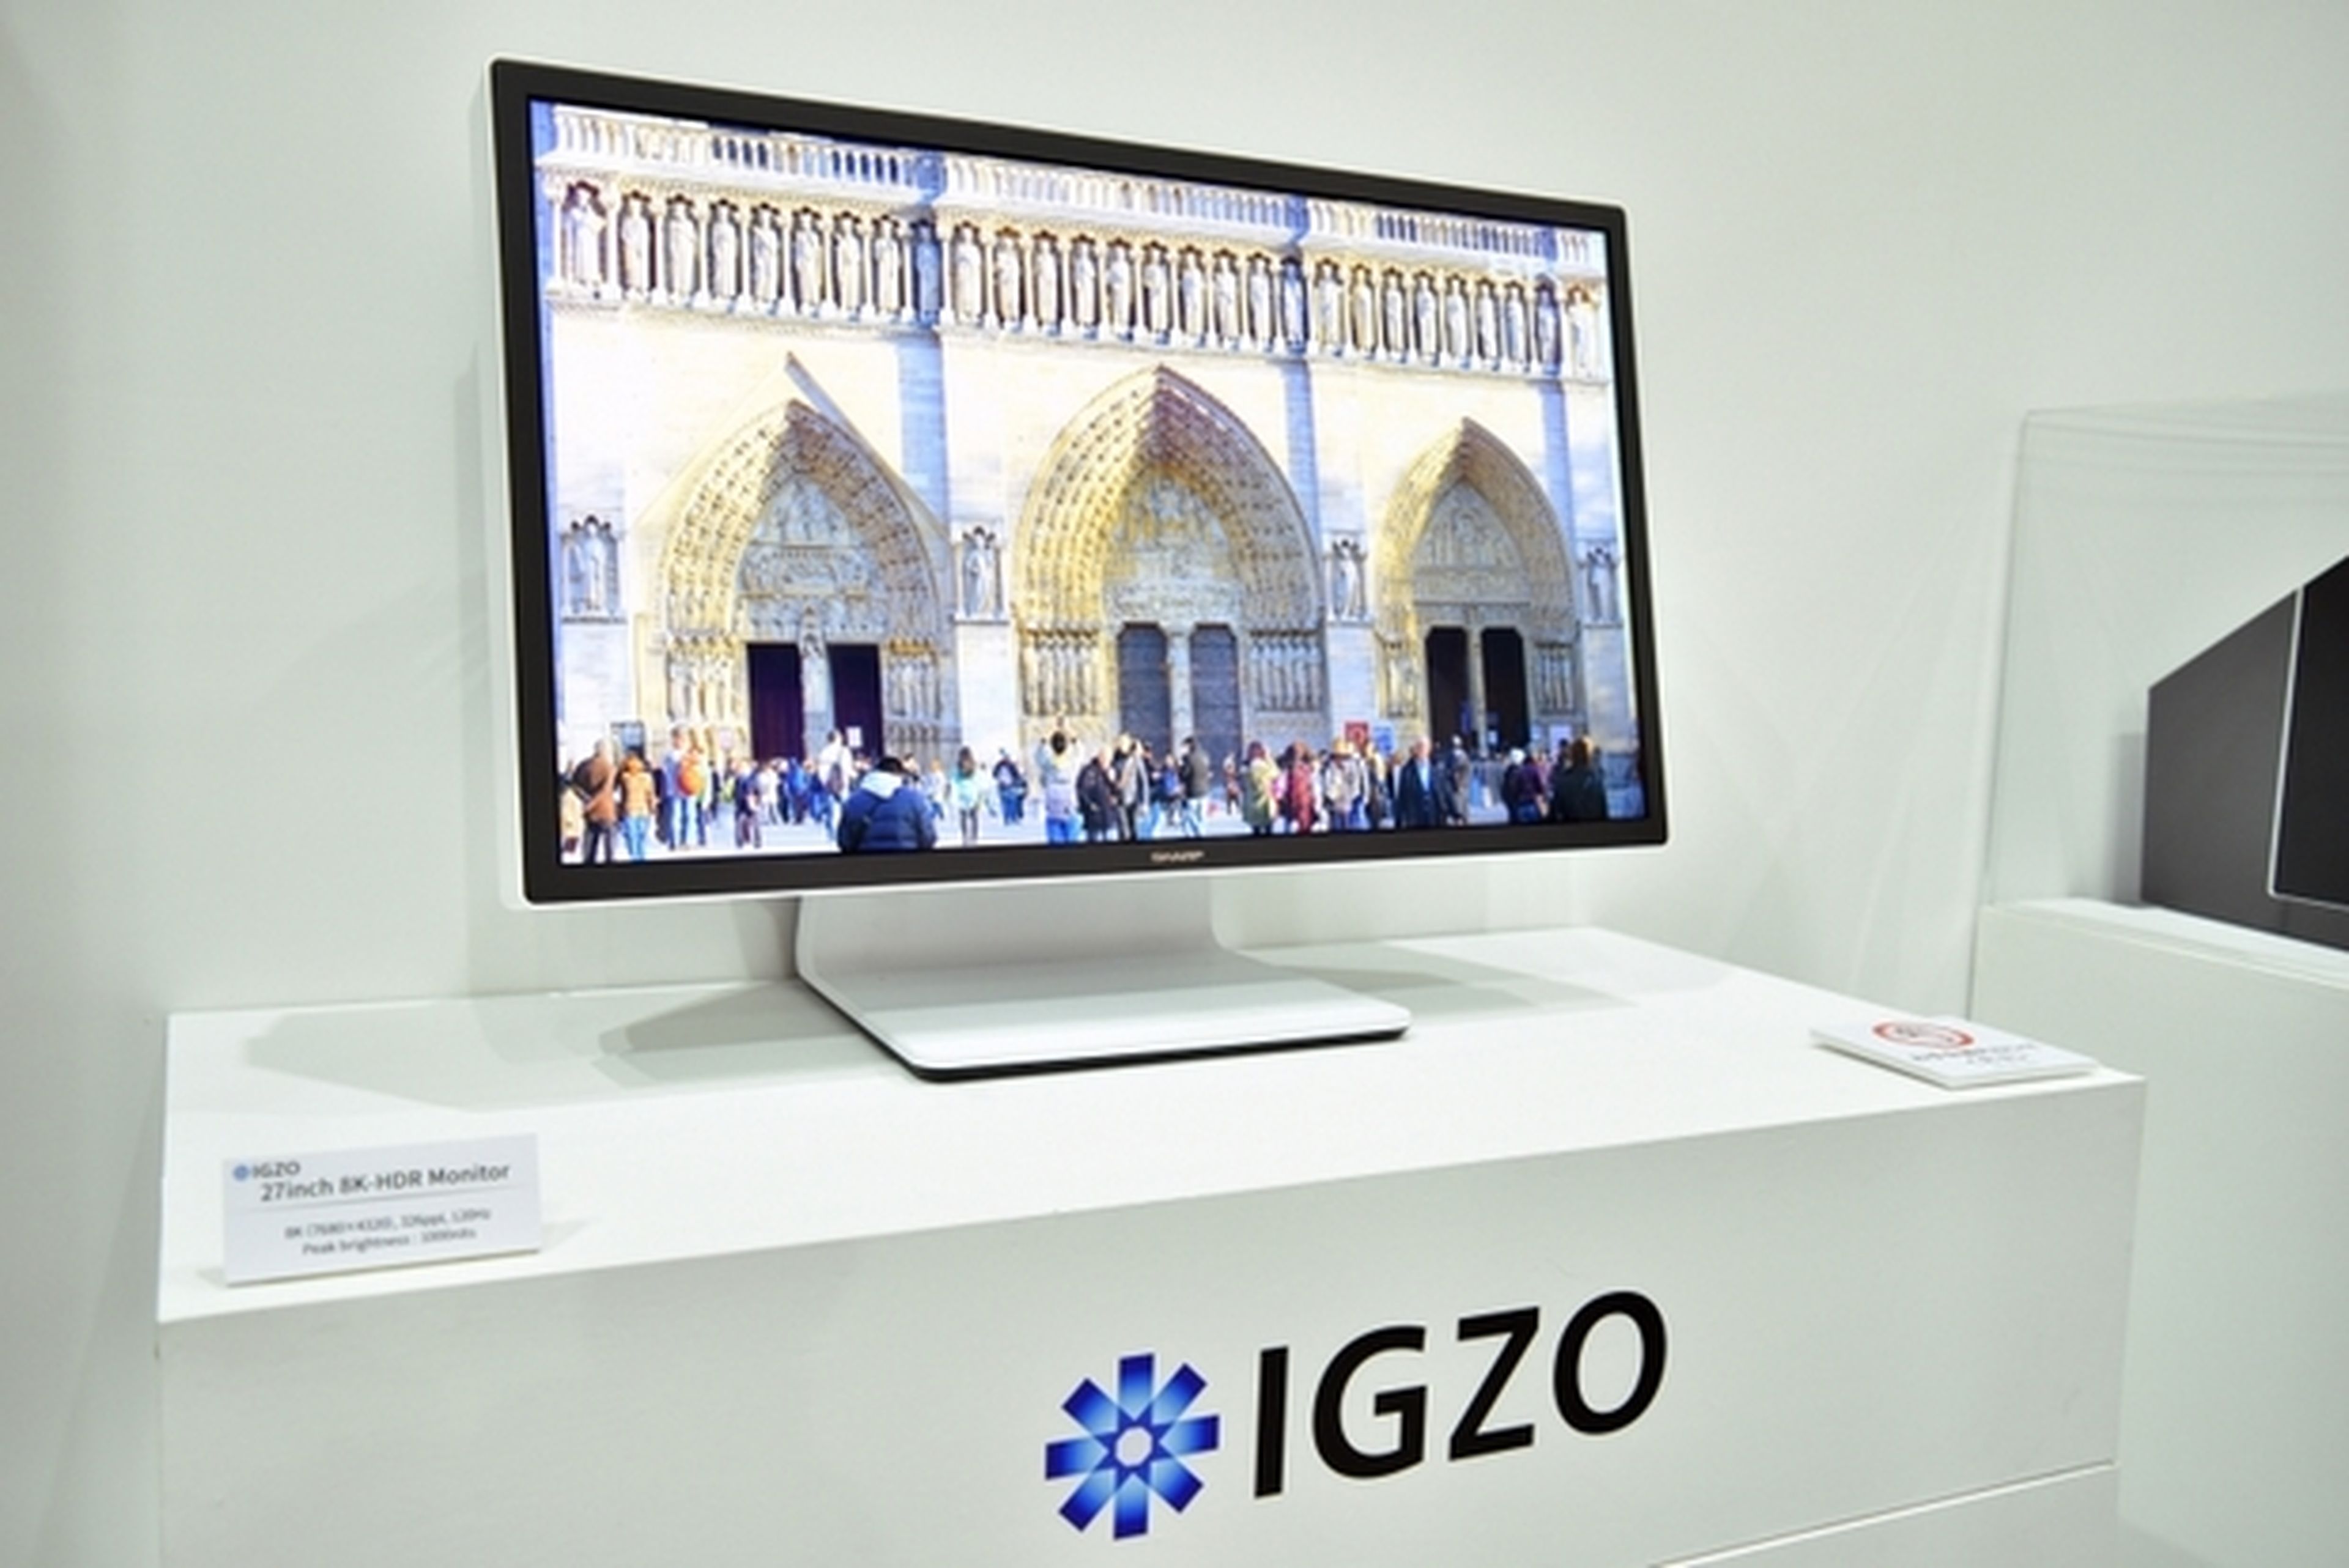 Sharp IGZO, el monitor 8K de 27 pulgadas a 120 Hz con HDR